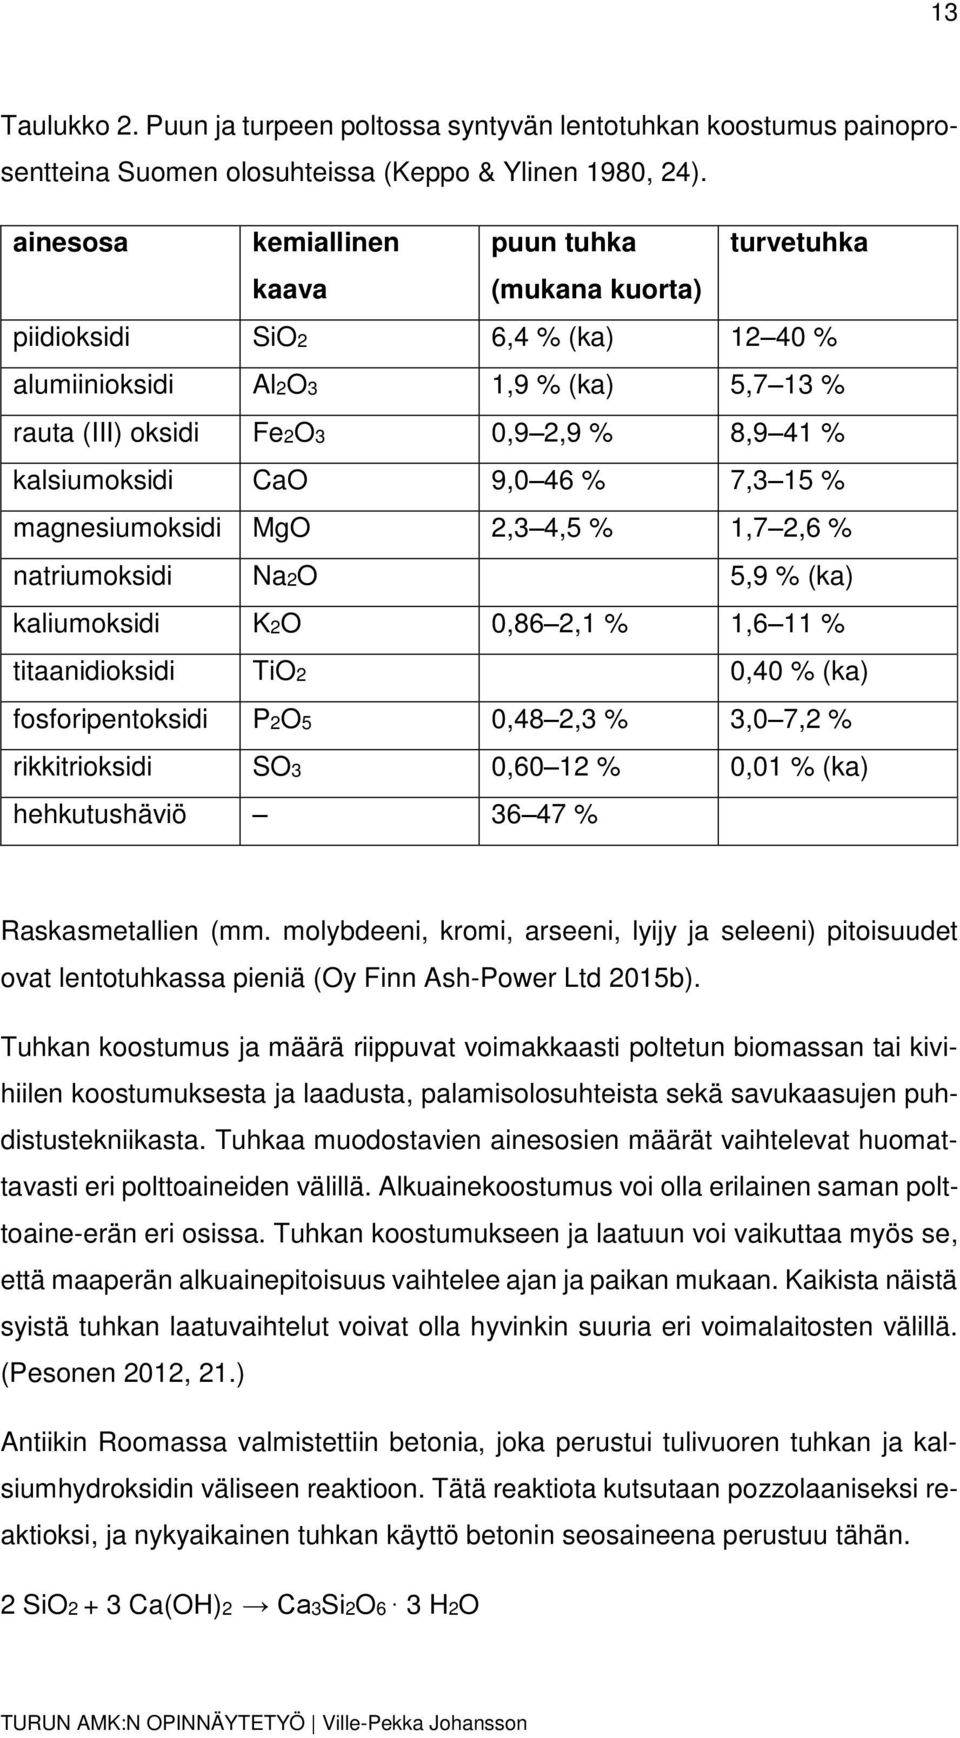 CaO 9,0 46 % 7,3 15 % magnesiumoksidi MgO 2,3 4,5 % 1,7 2,6 % natriumoksidi Na2O 5,9 % (ka) kaliumoksidi K2O 0,86 2,1 % 1,6 11 % titaanidioksidi TiO2 0,40 % (ka) fosforipentoksidi P2O5 0,48 2,3 % 3,0